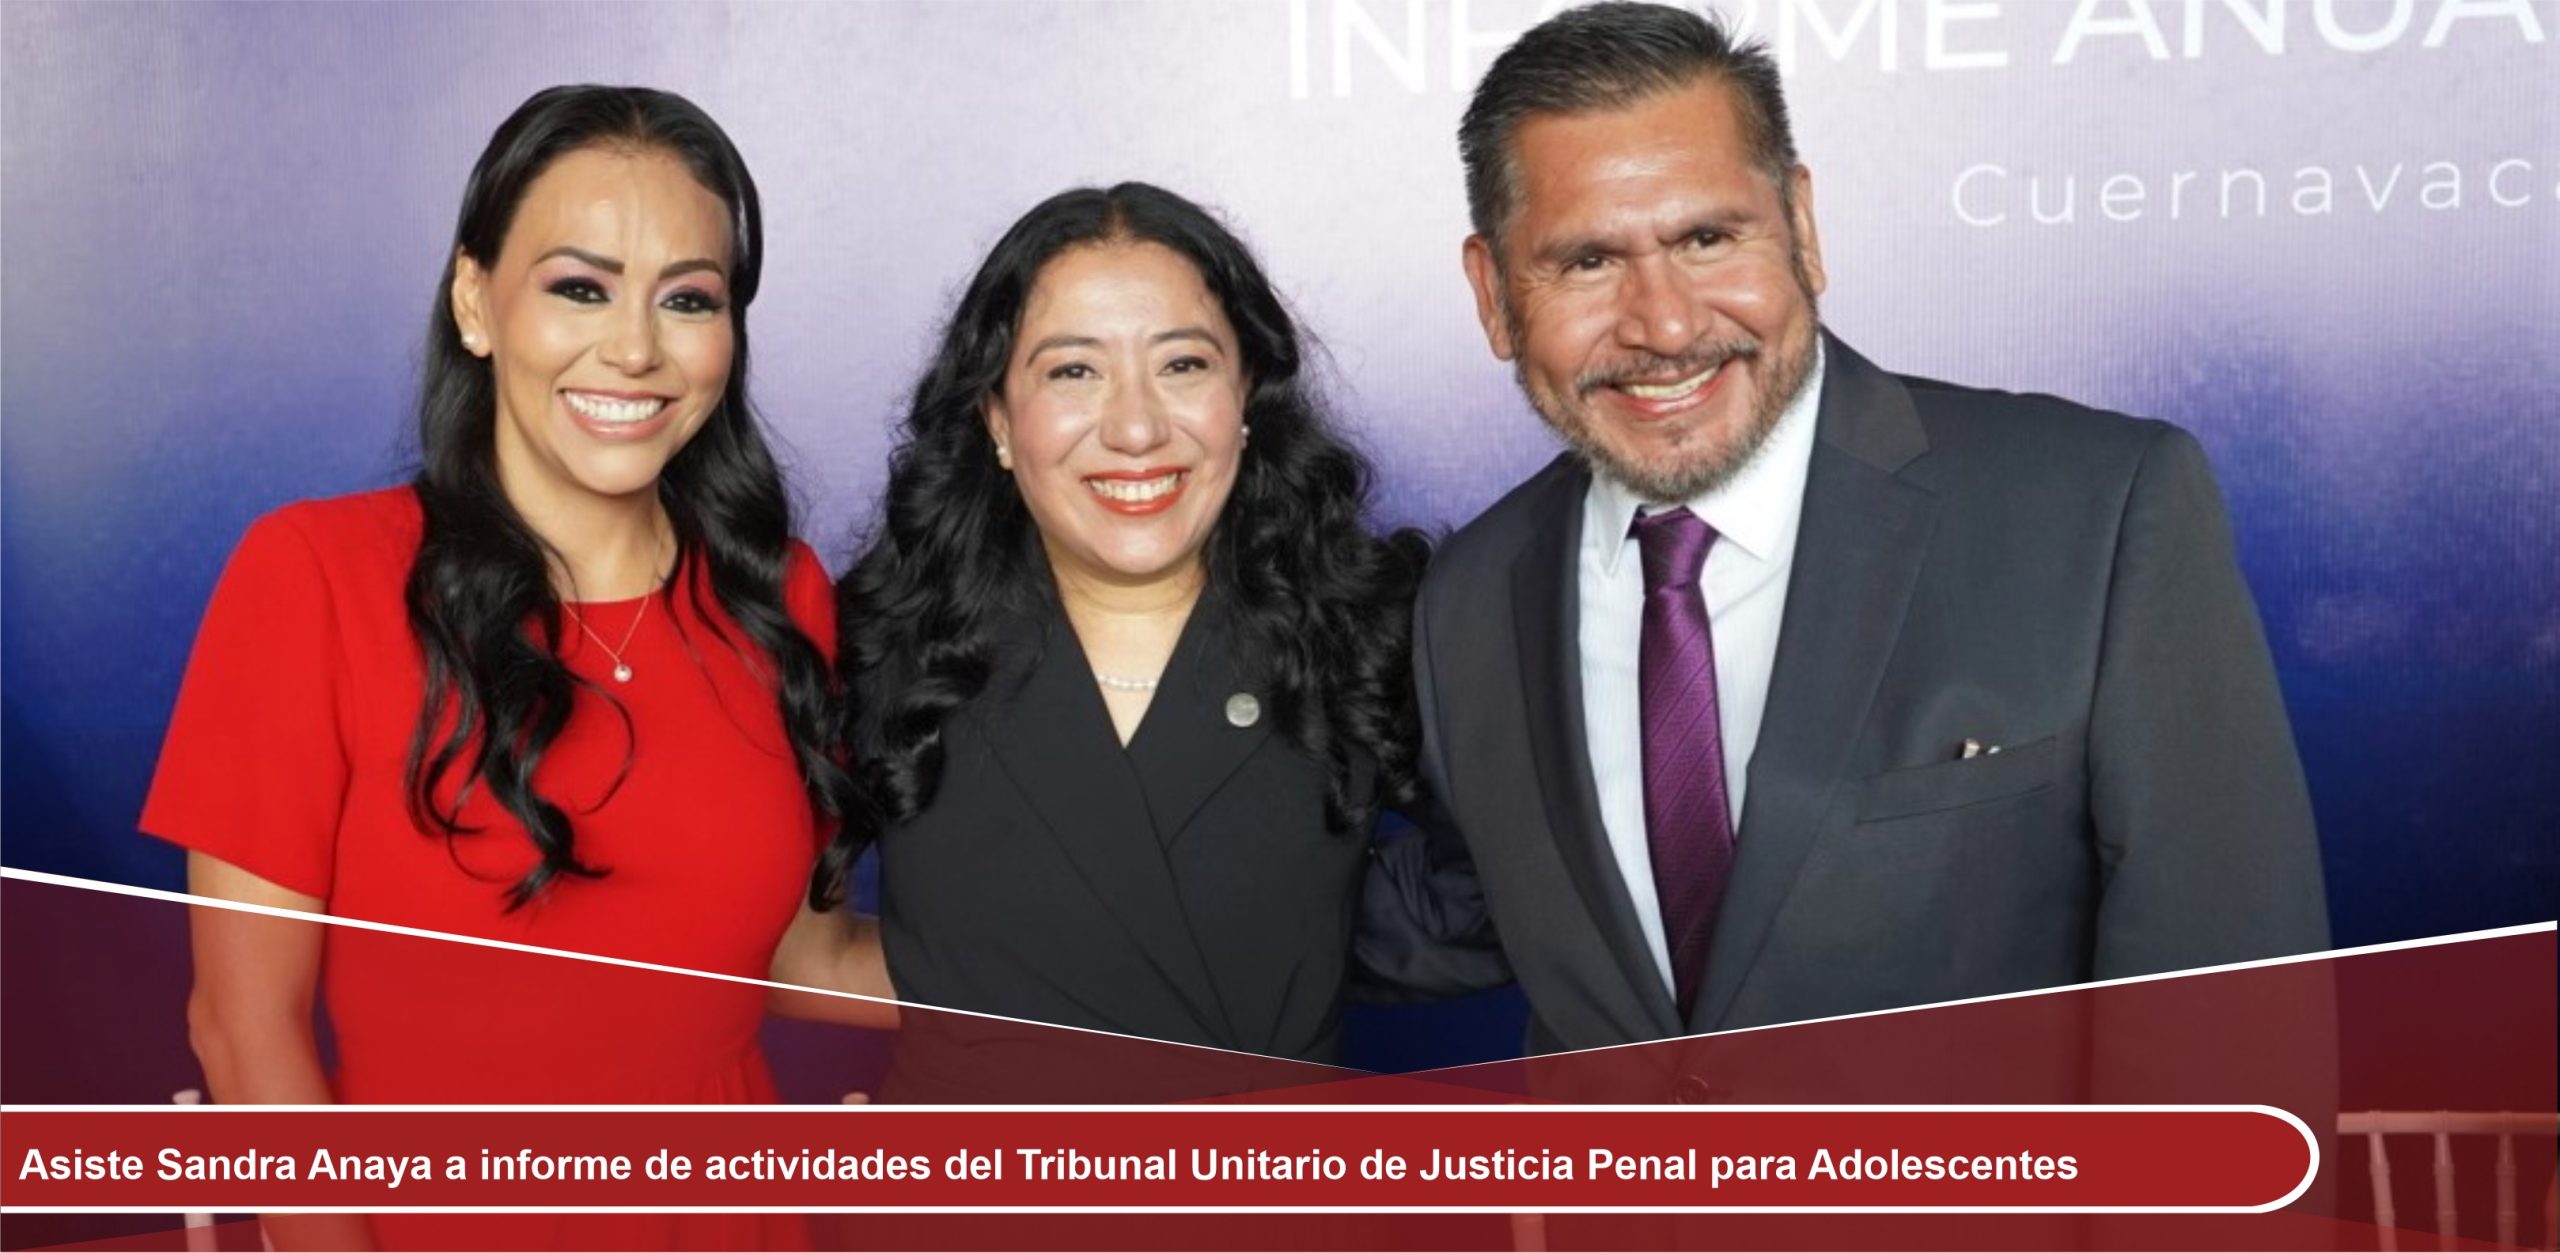 Asiste Sandra Anaya a informe de actividades del Tribunal Unitario de Justicia Penal para Adolescentes